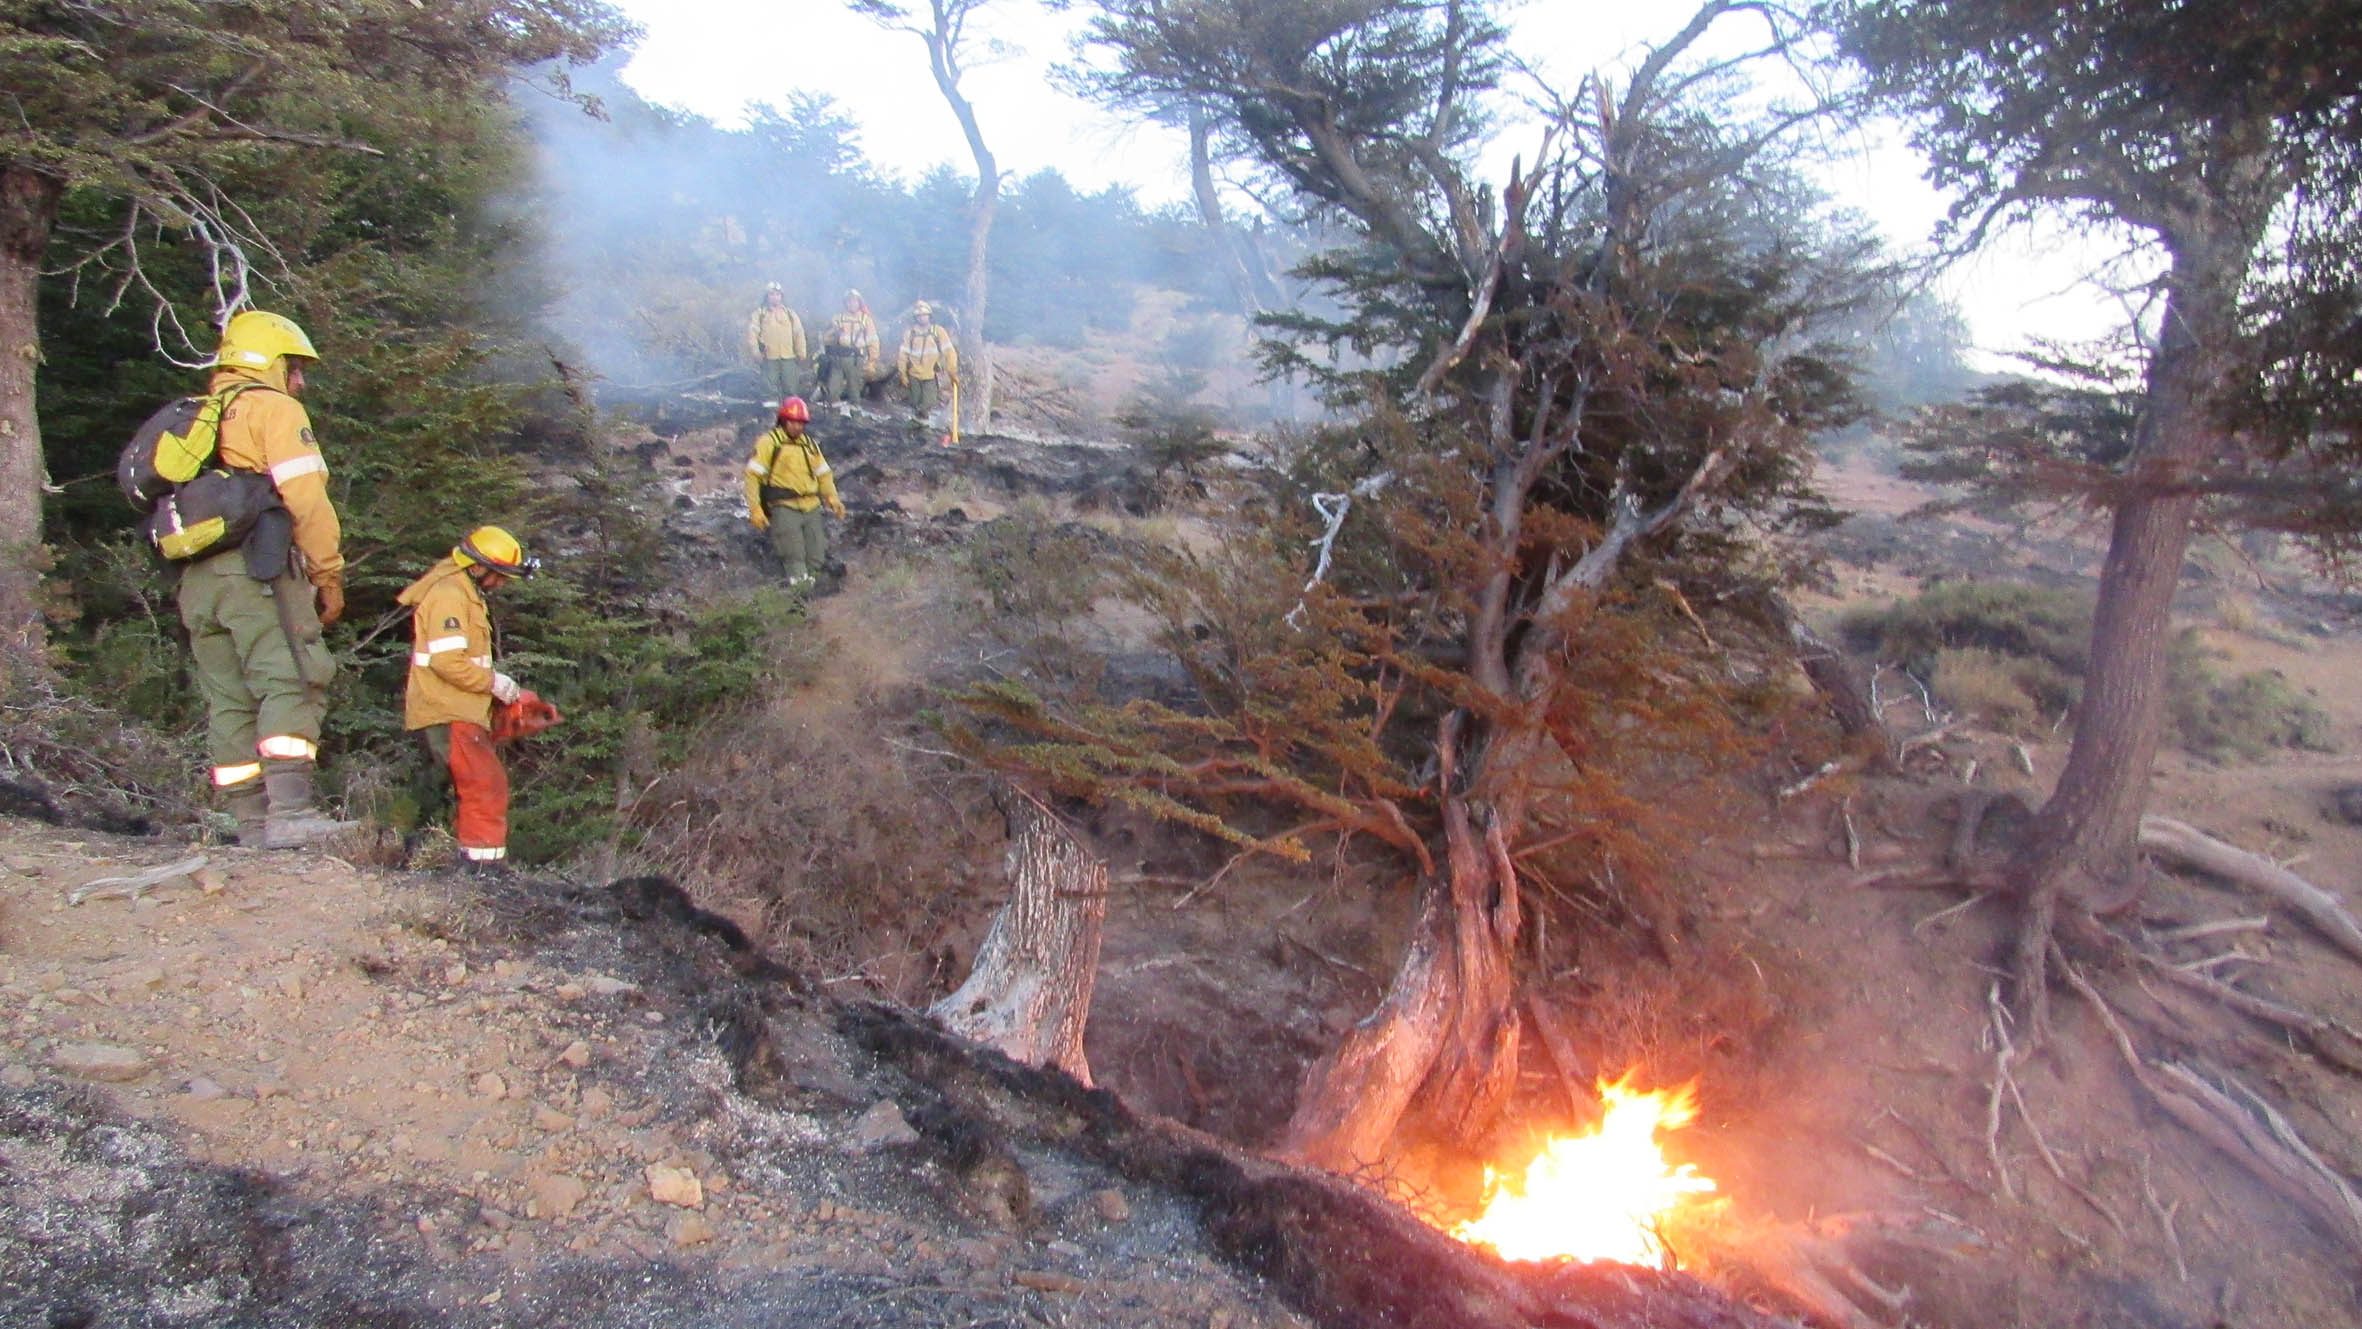 El fuego afecta bosque y arbustos. Imagen ilustrativa.